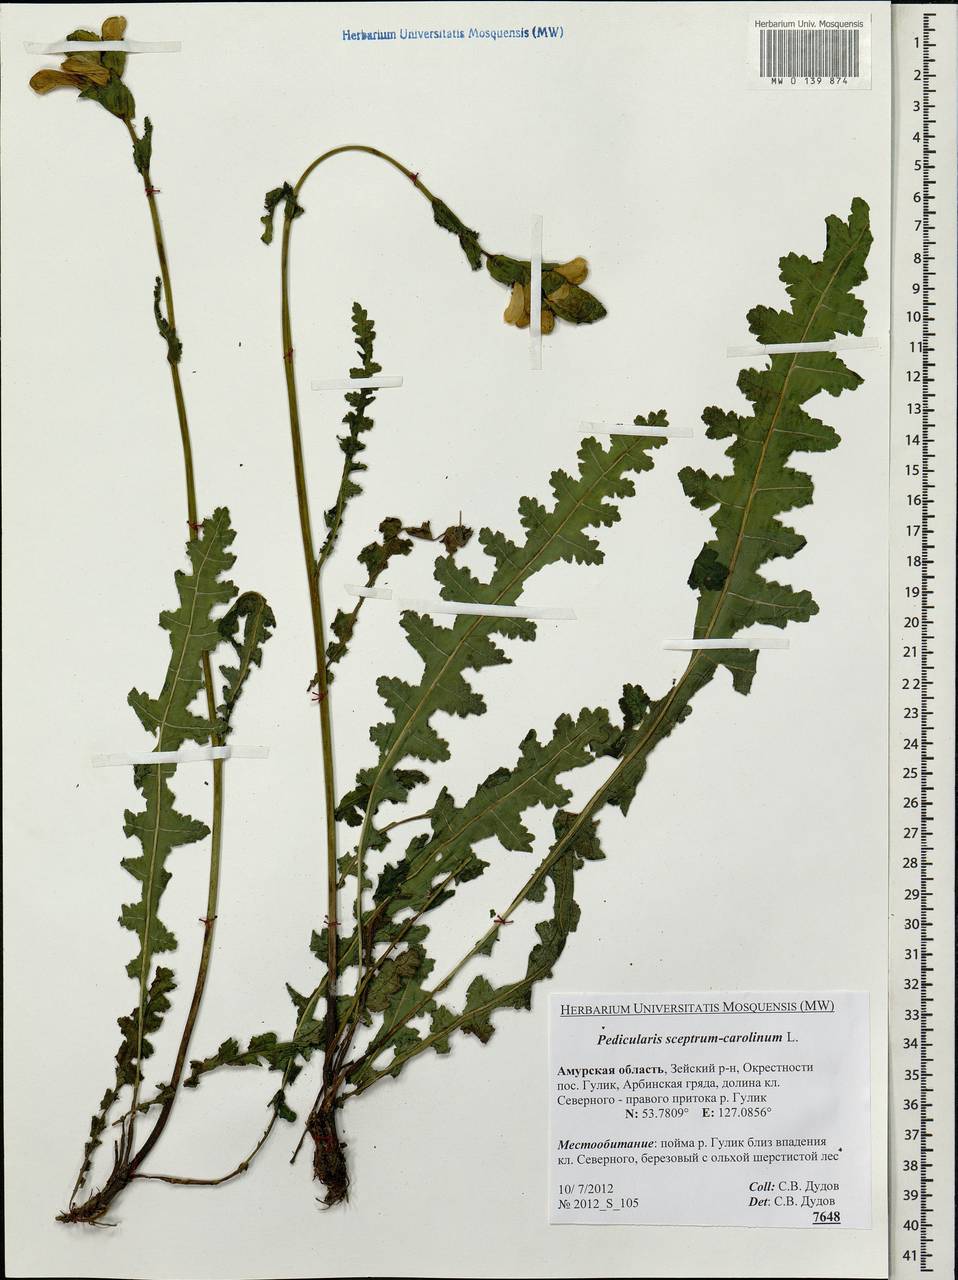 Pedicularis sceptrum-carolinum, Siberia, Russian Far East (S6) (Russia)